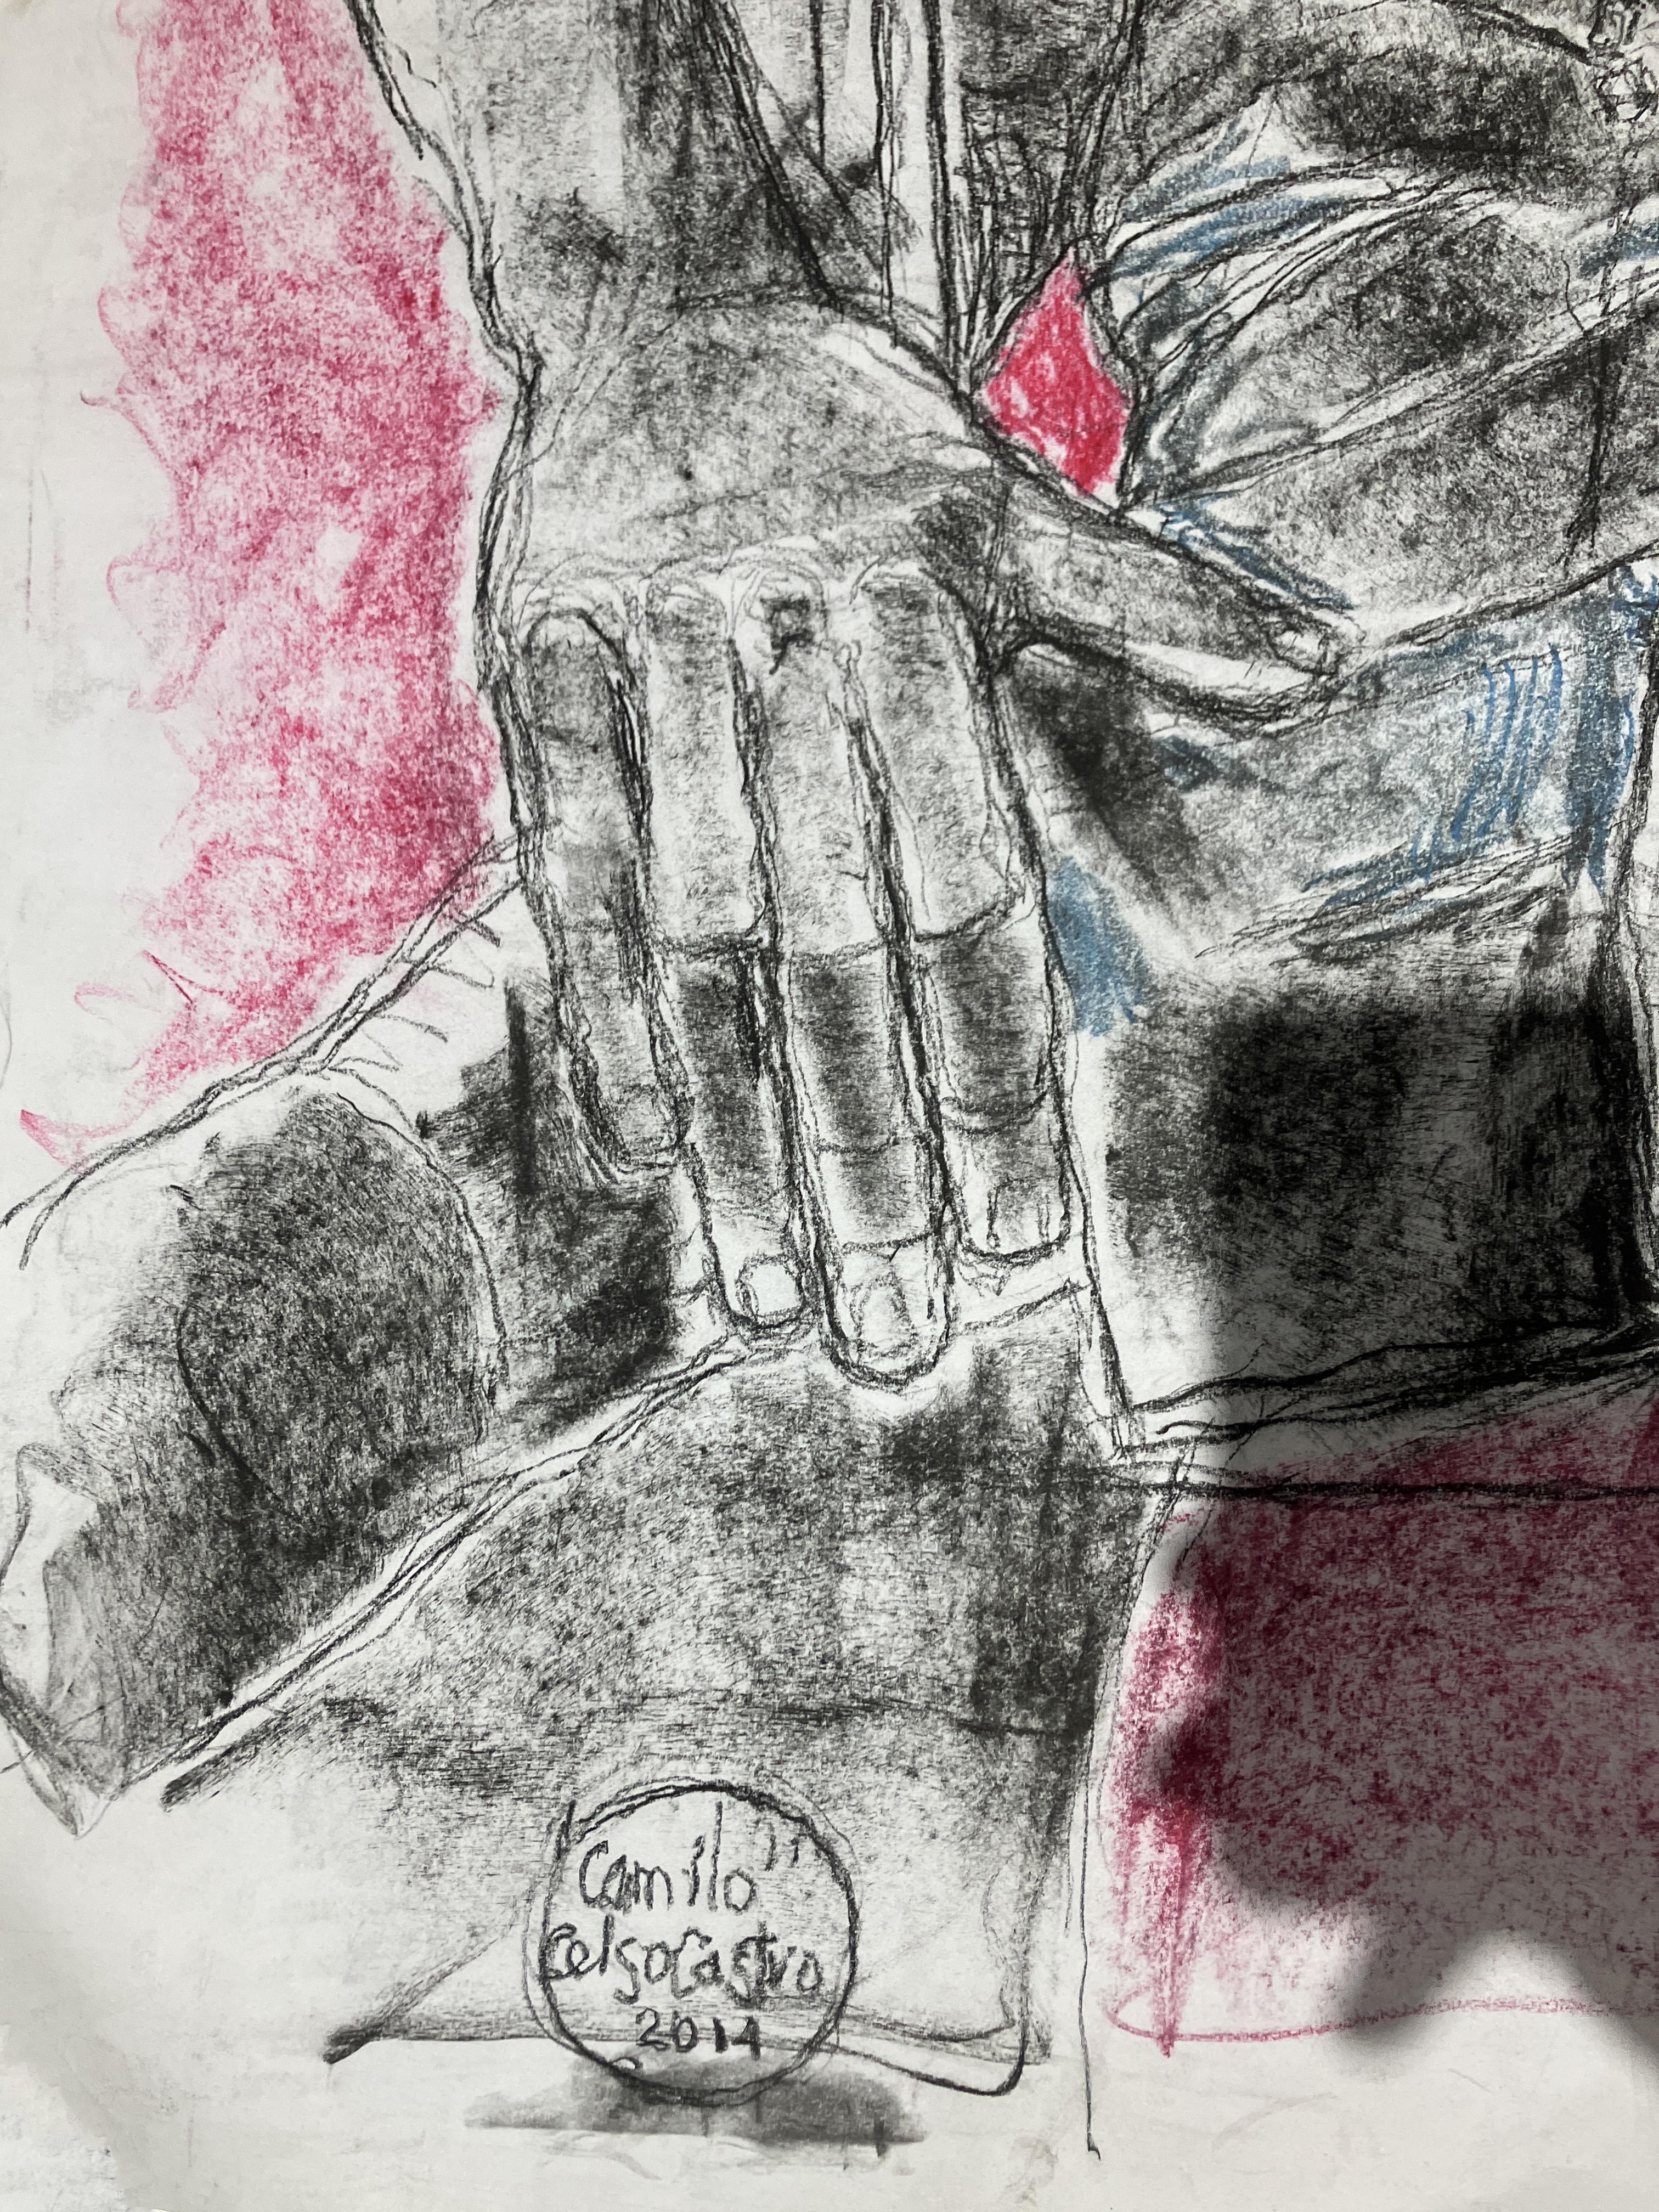 Camilo, 2014 par Celso Castro 
Crayon, craie sur papier
Taille de l'image : 39.2 H in. x 28 in. W 
Non encadré
____________
Indéfinies par le médium, les œuvres de Celso Castro portent chacune la présence de la main de l'artiste à travers la